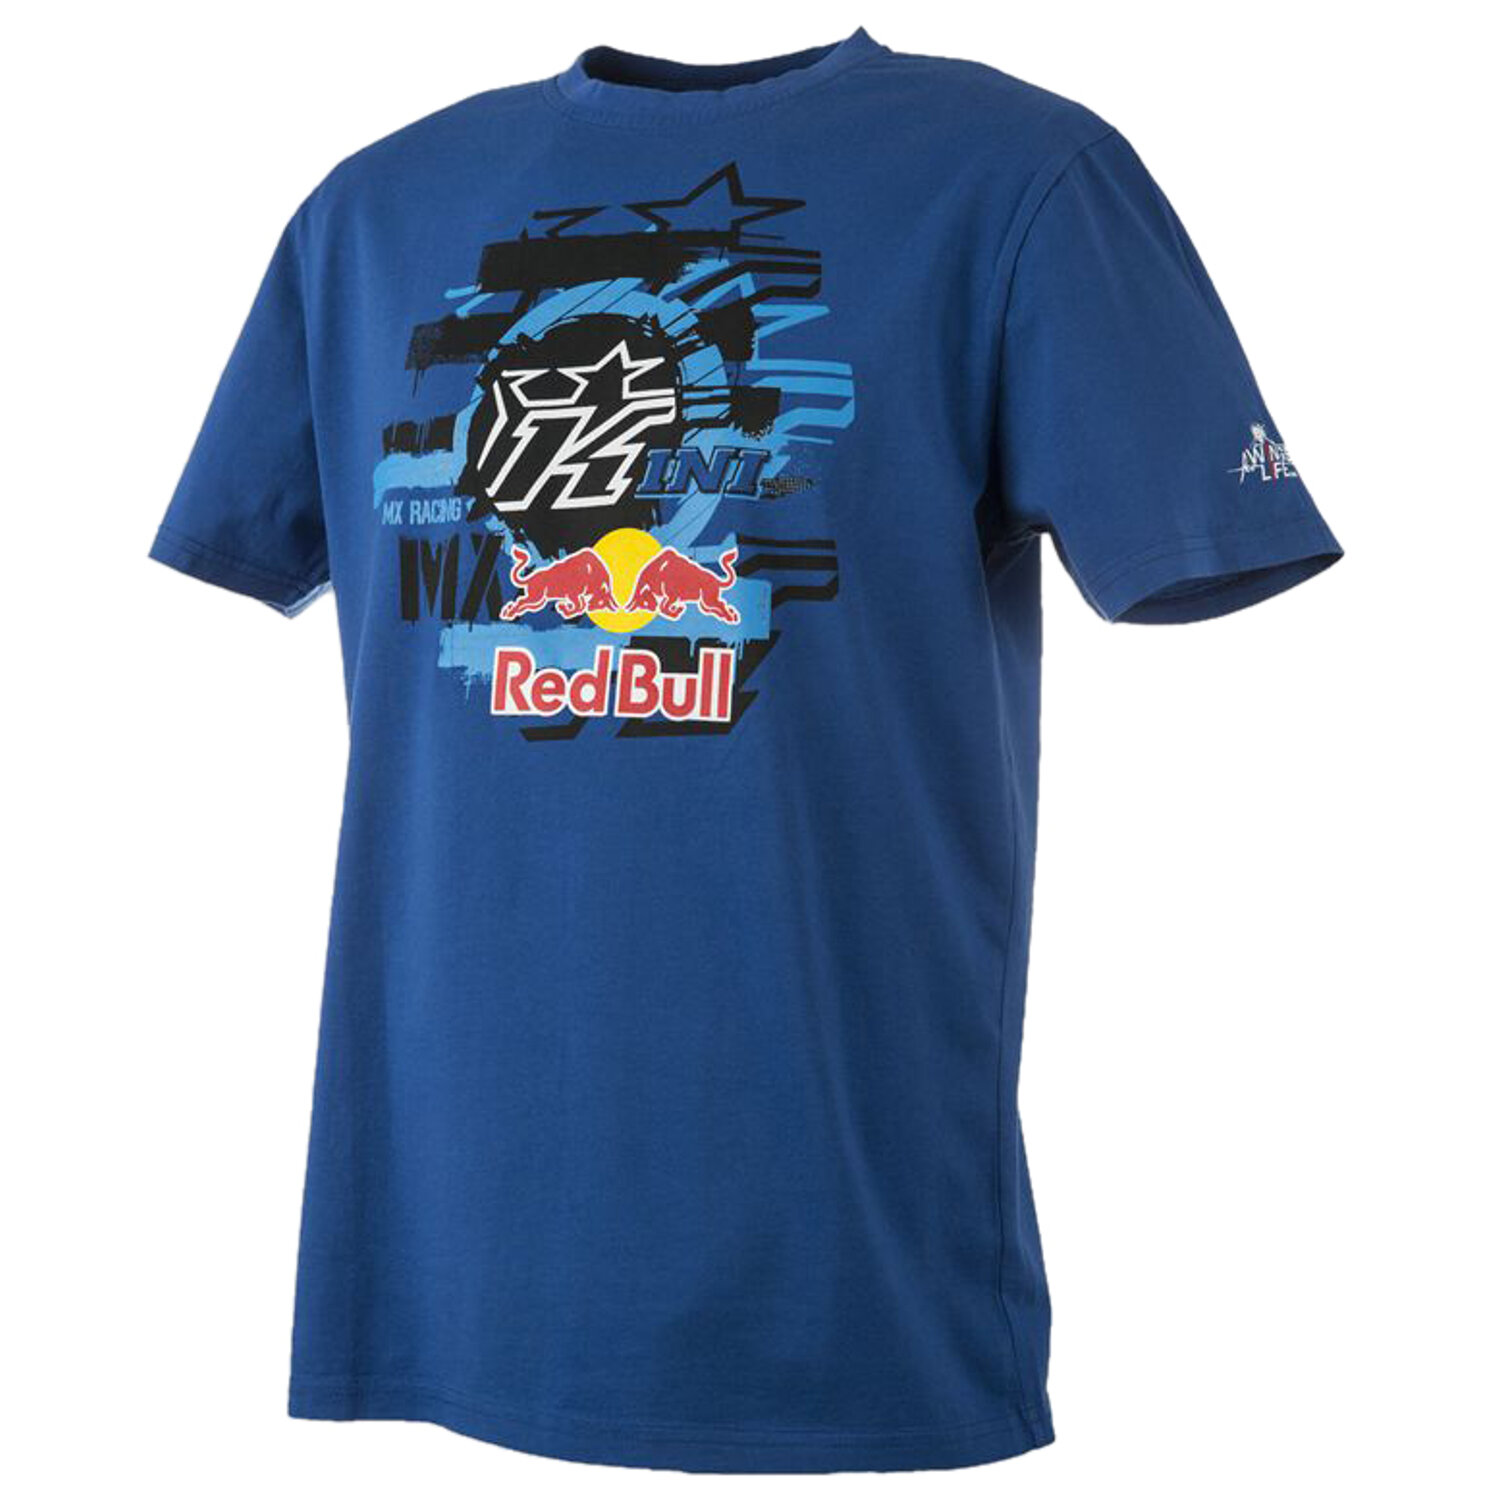 Kini Red Bull Bimbo T-Shirt Layered Navy